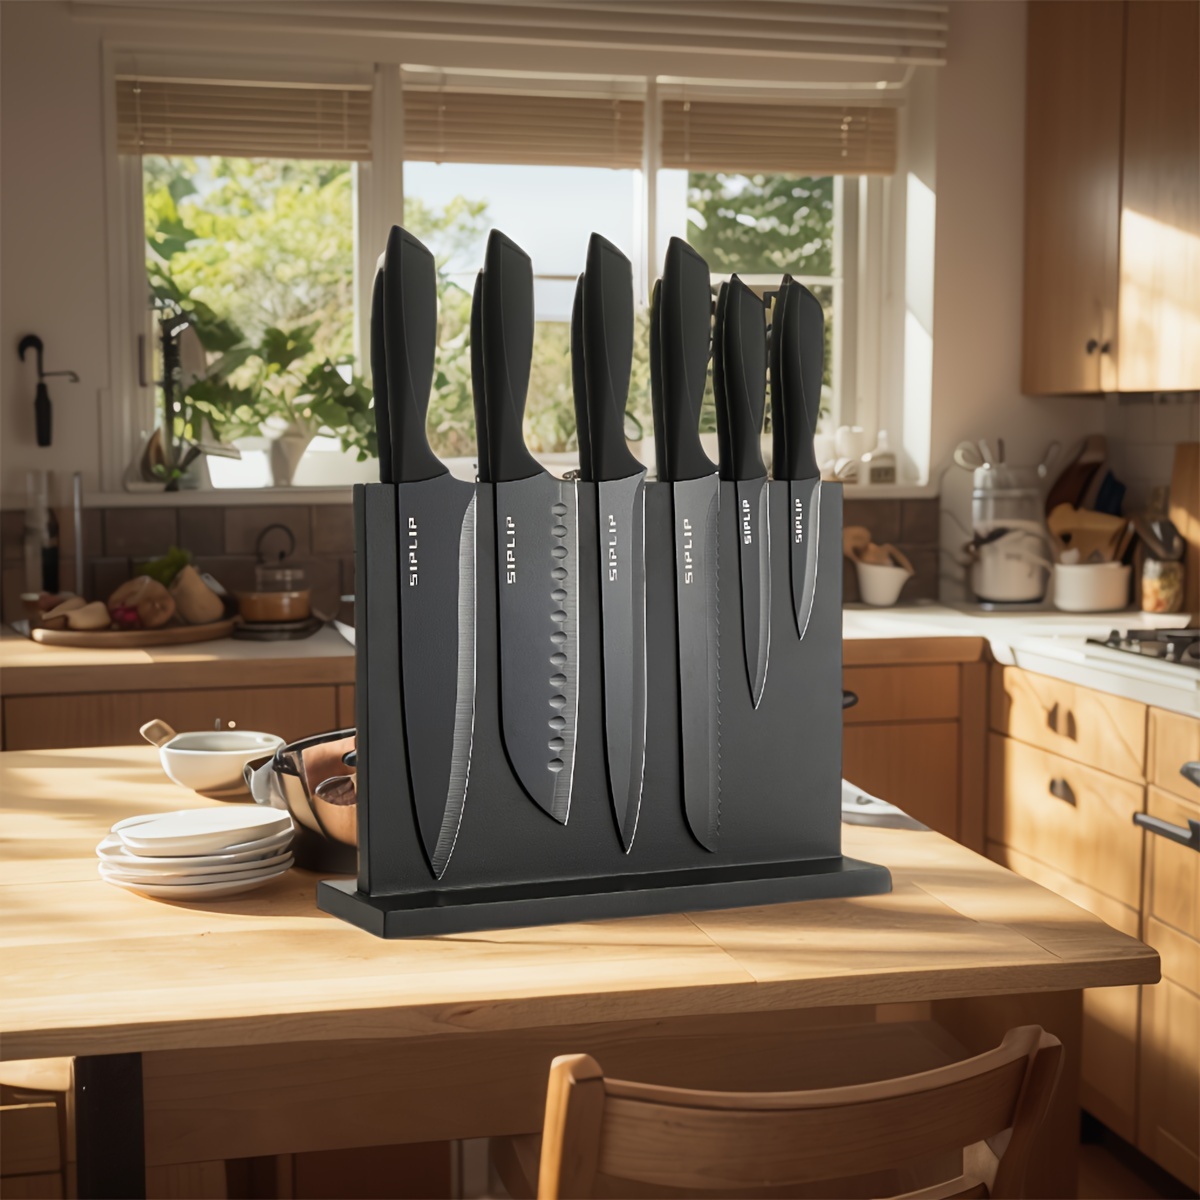 

Kitchen Knife Set With Magnetic Knife Holder, 15 Pieces High Carbon Stainless Steel Sharp Kitchen Knife Set Including Chef's Knife, Bread Knife, Serrated Steak Knife Set, Knife Sharpener